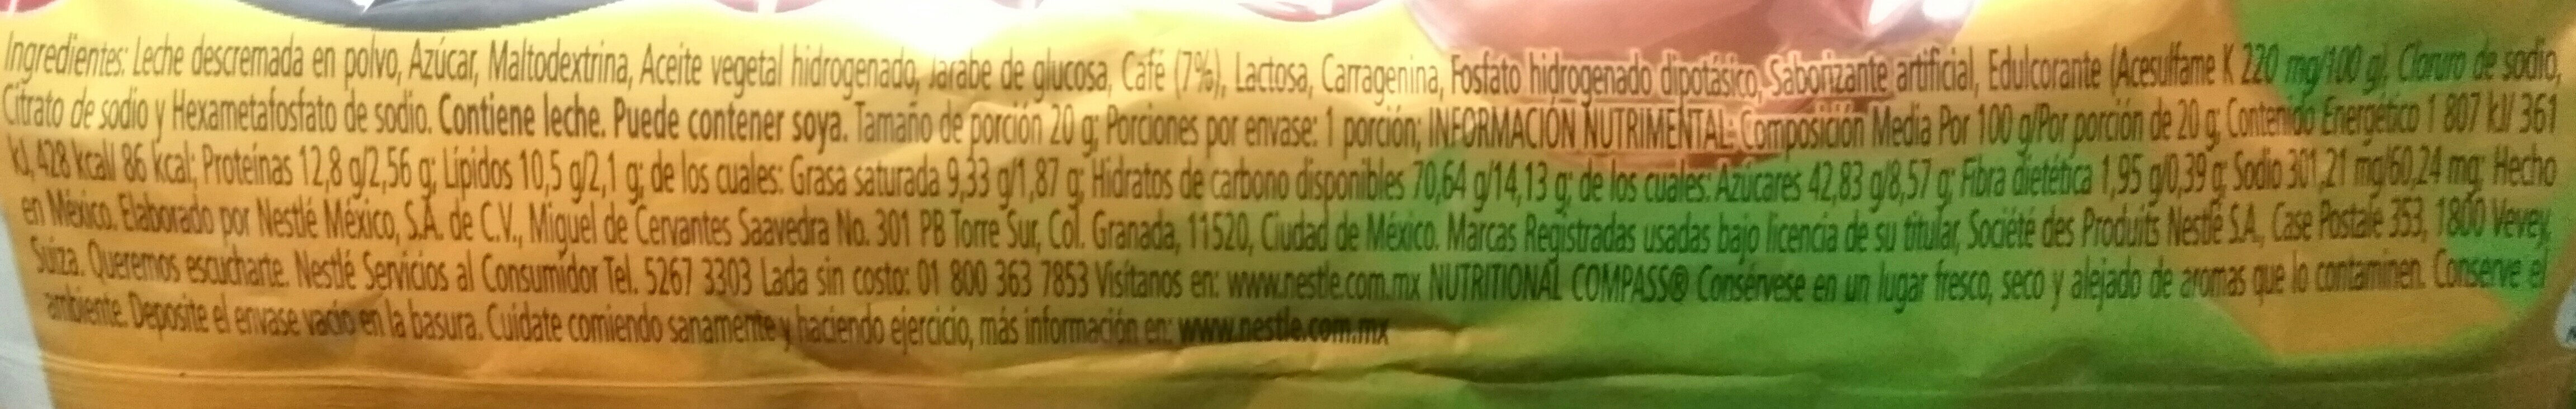 Nescafe cappuccino - Información nutricional